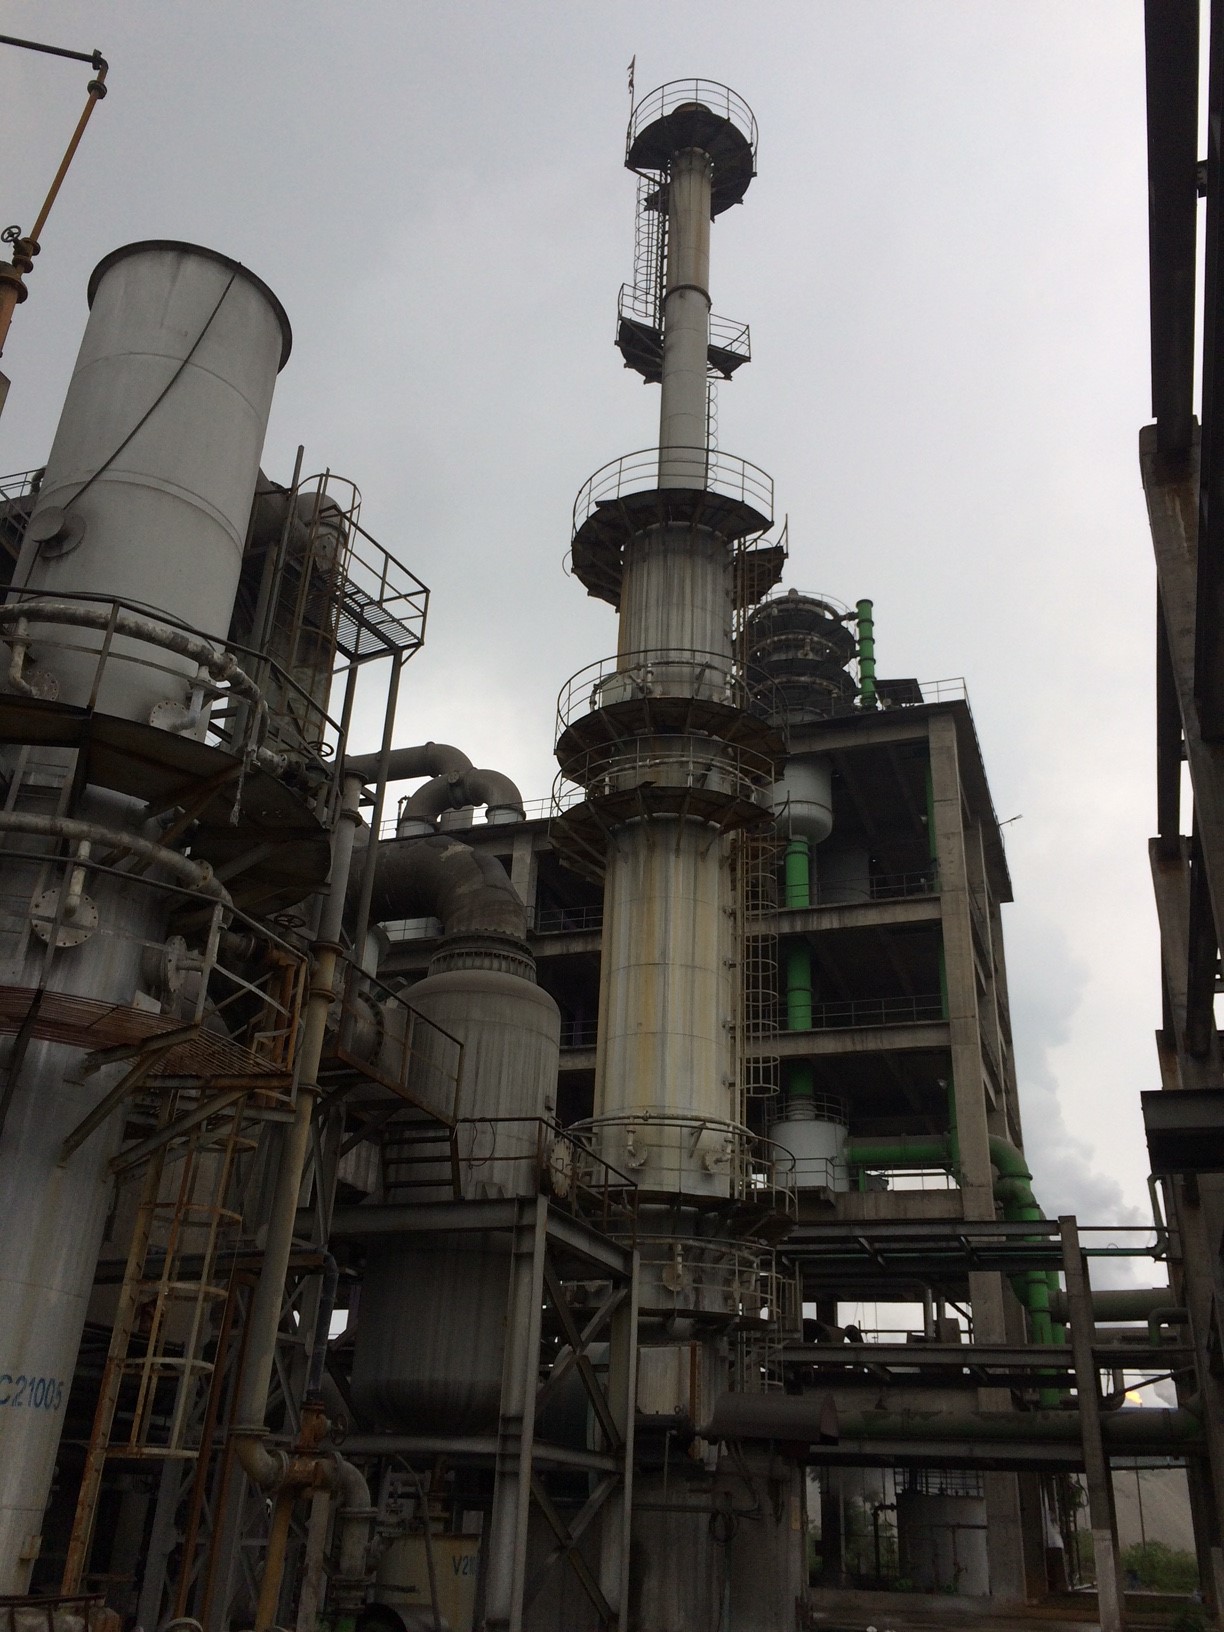 Trạm quan trắc tự động khí thải ống khói tại Cty Hóa chất Đức Giang-Lào Cai. Các thông số quan trắc: O2, HF, Lưu lượng